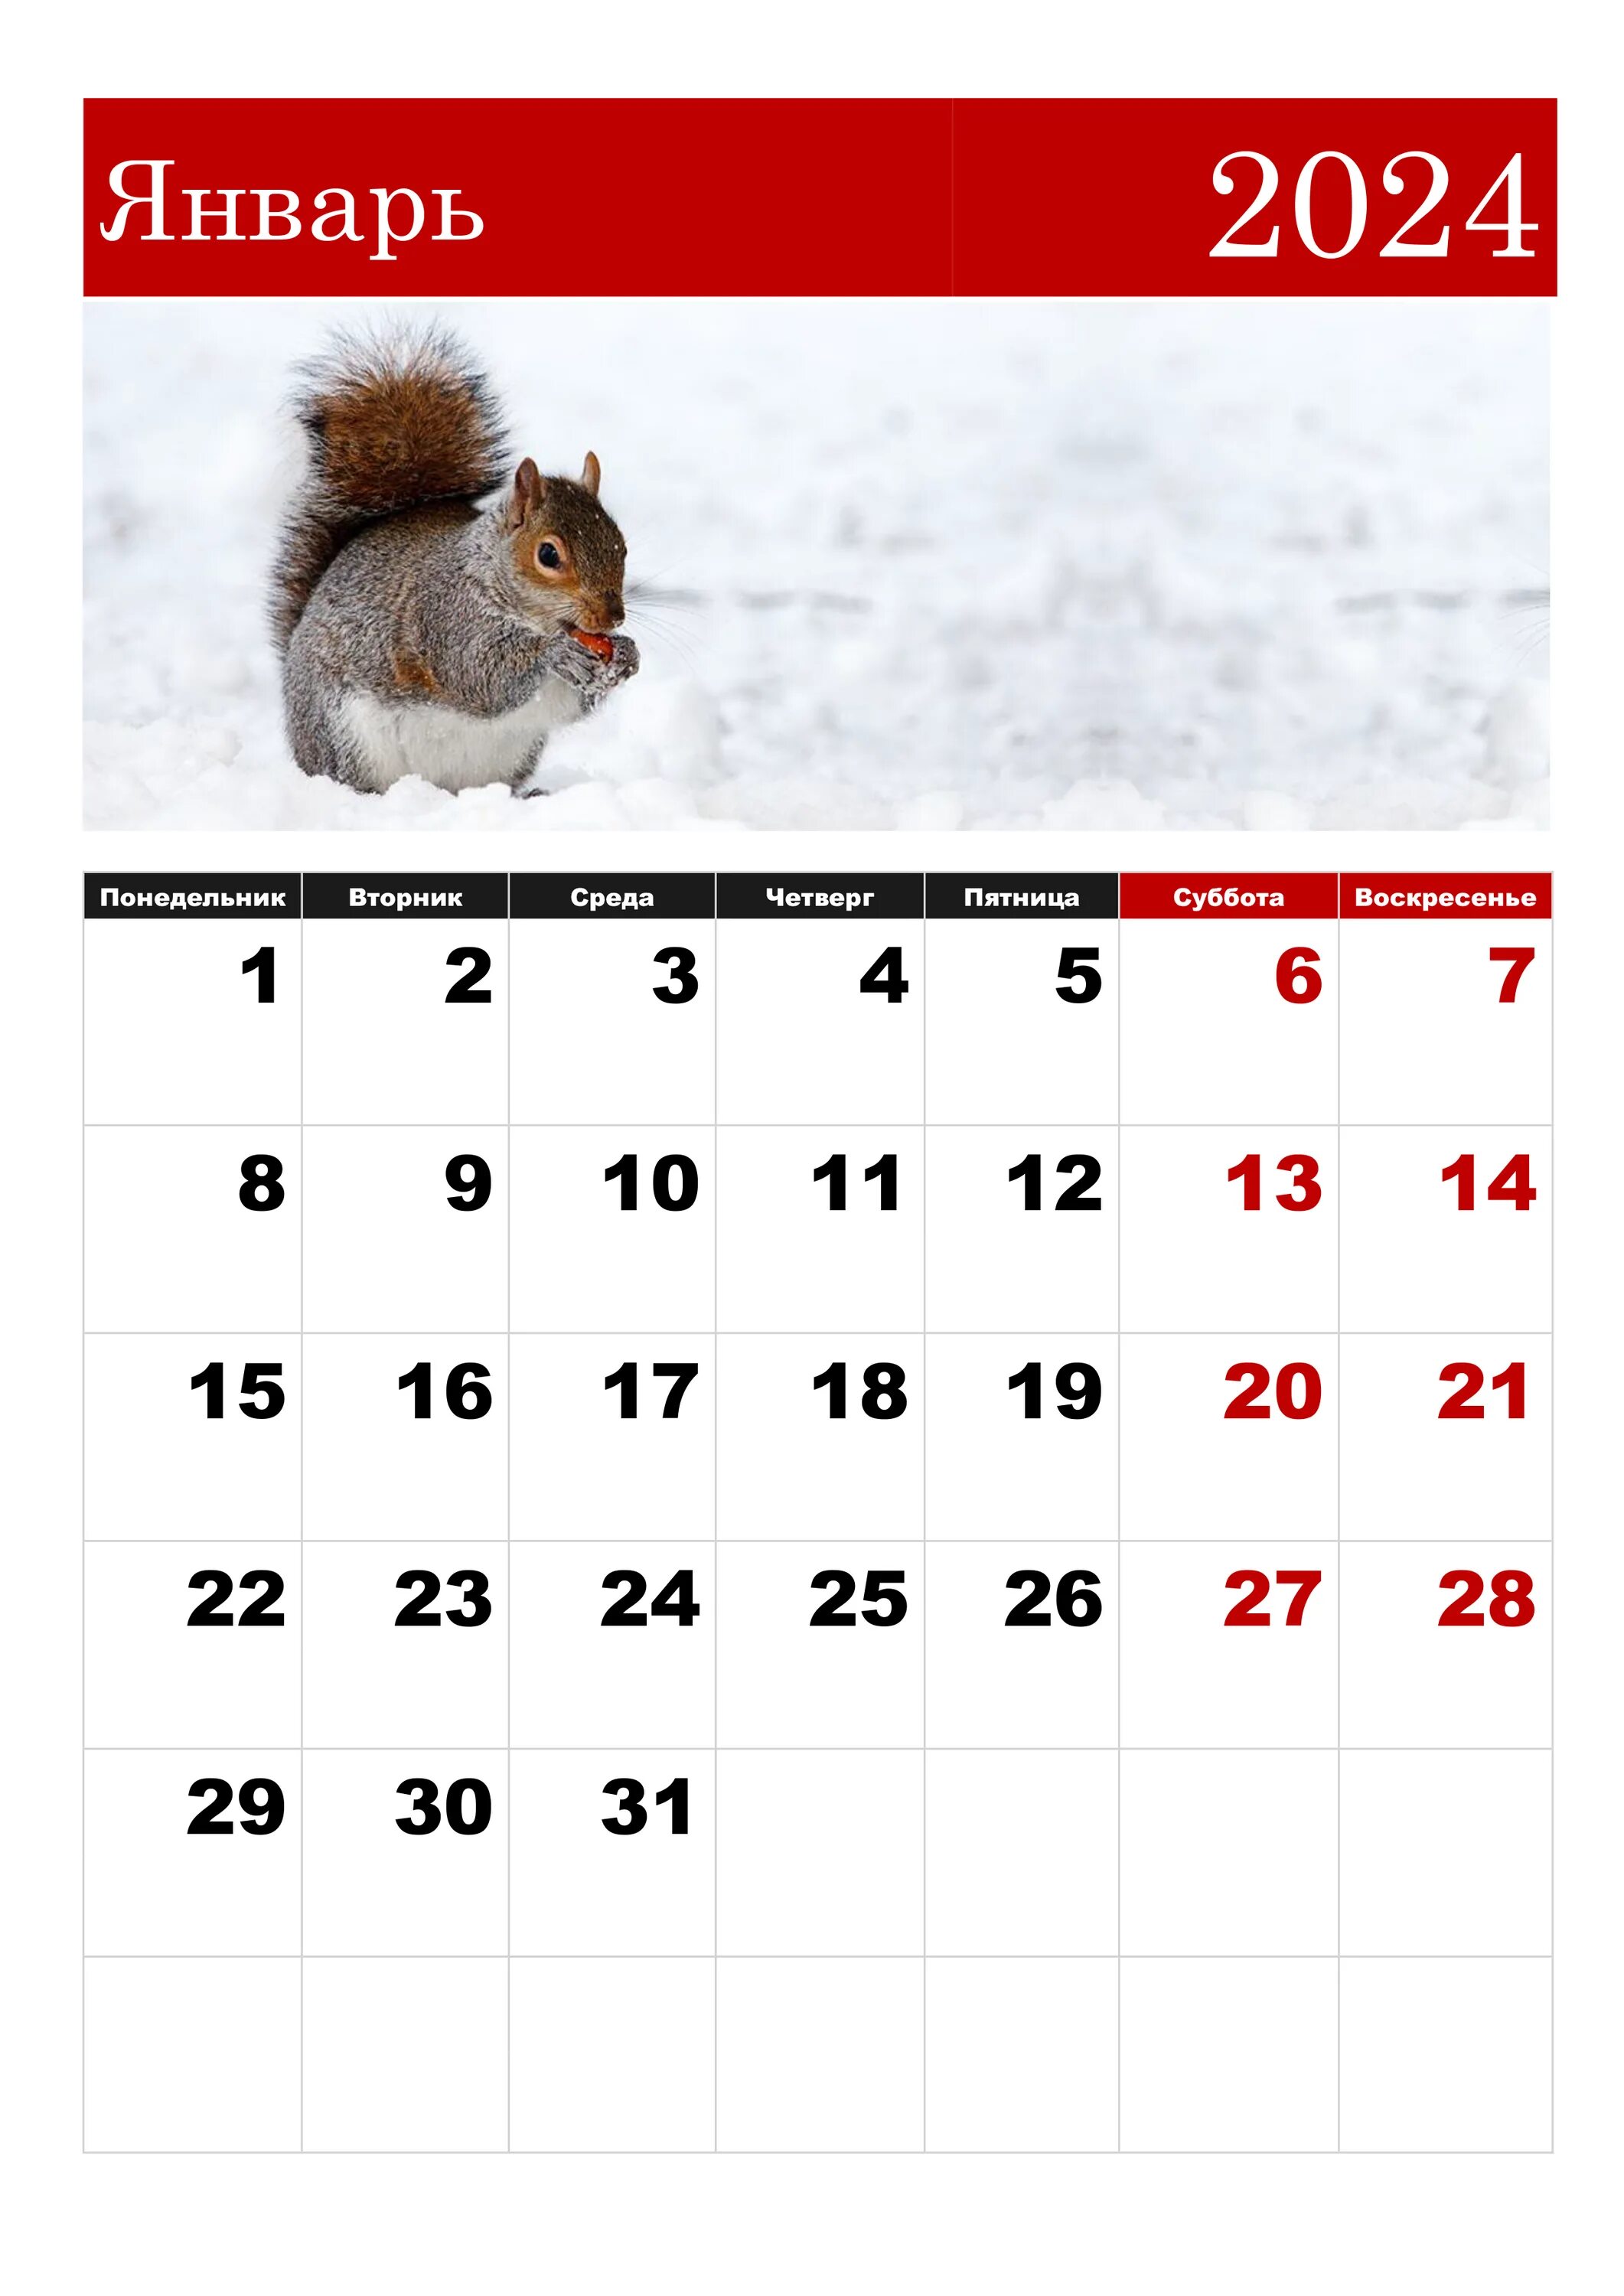 Через сколько будет февраль 2024. Календарная январь 2024. ЯНВАРЬРЬ 2024. Календарь январь. Календарь на январь 2024 года.